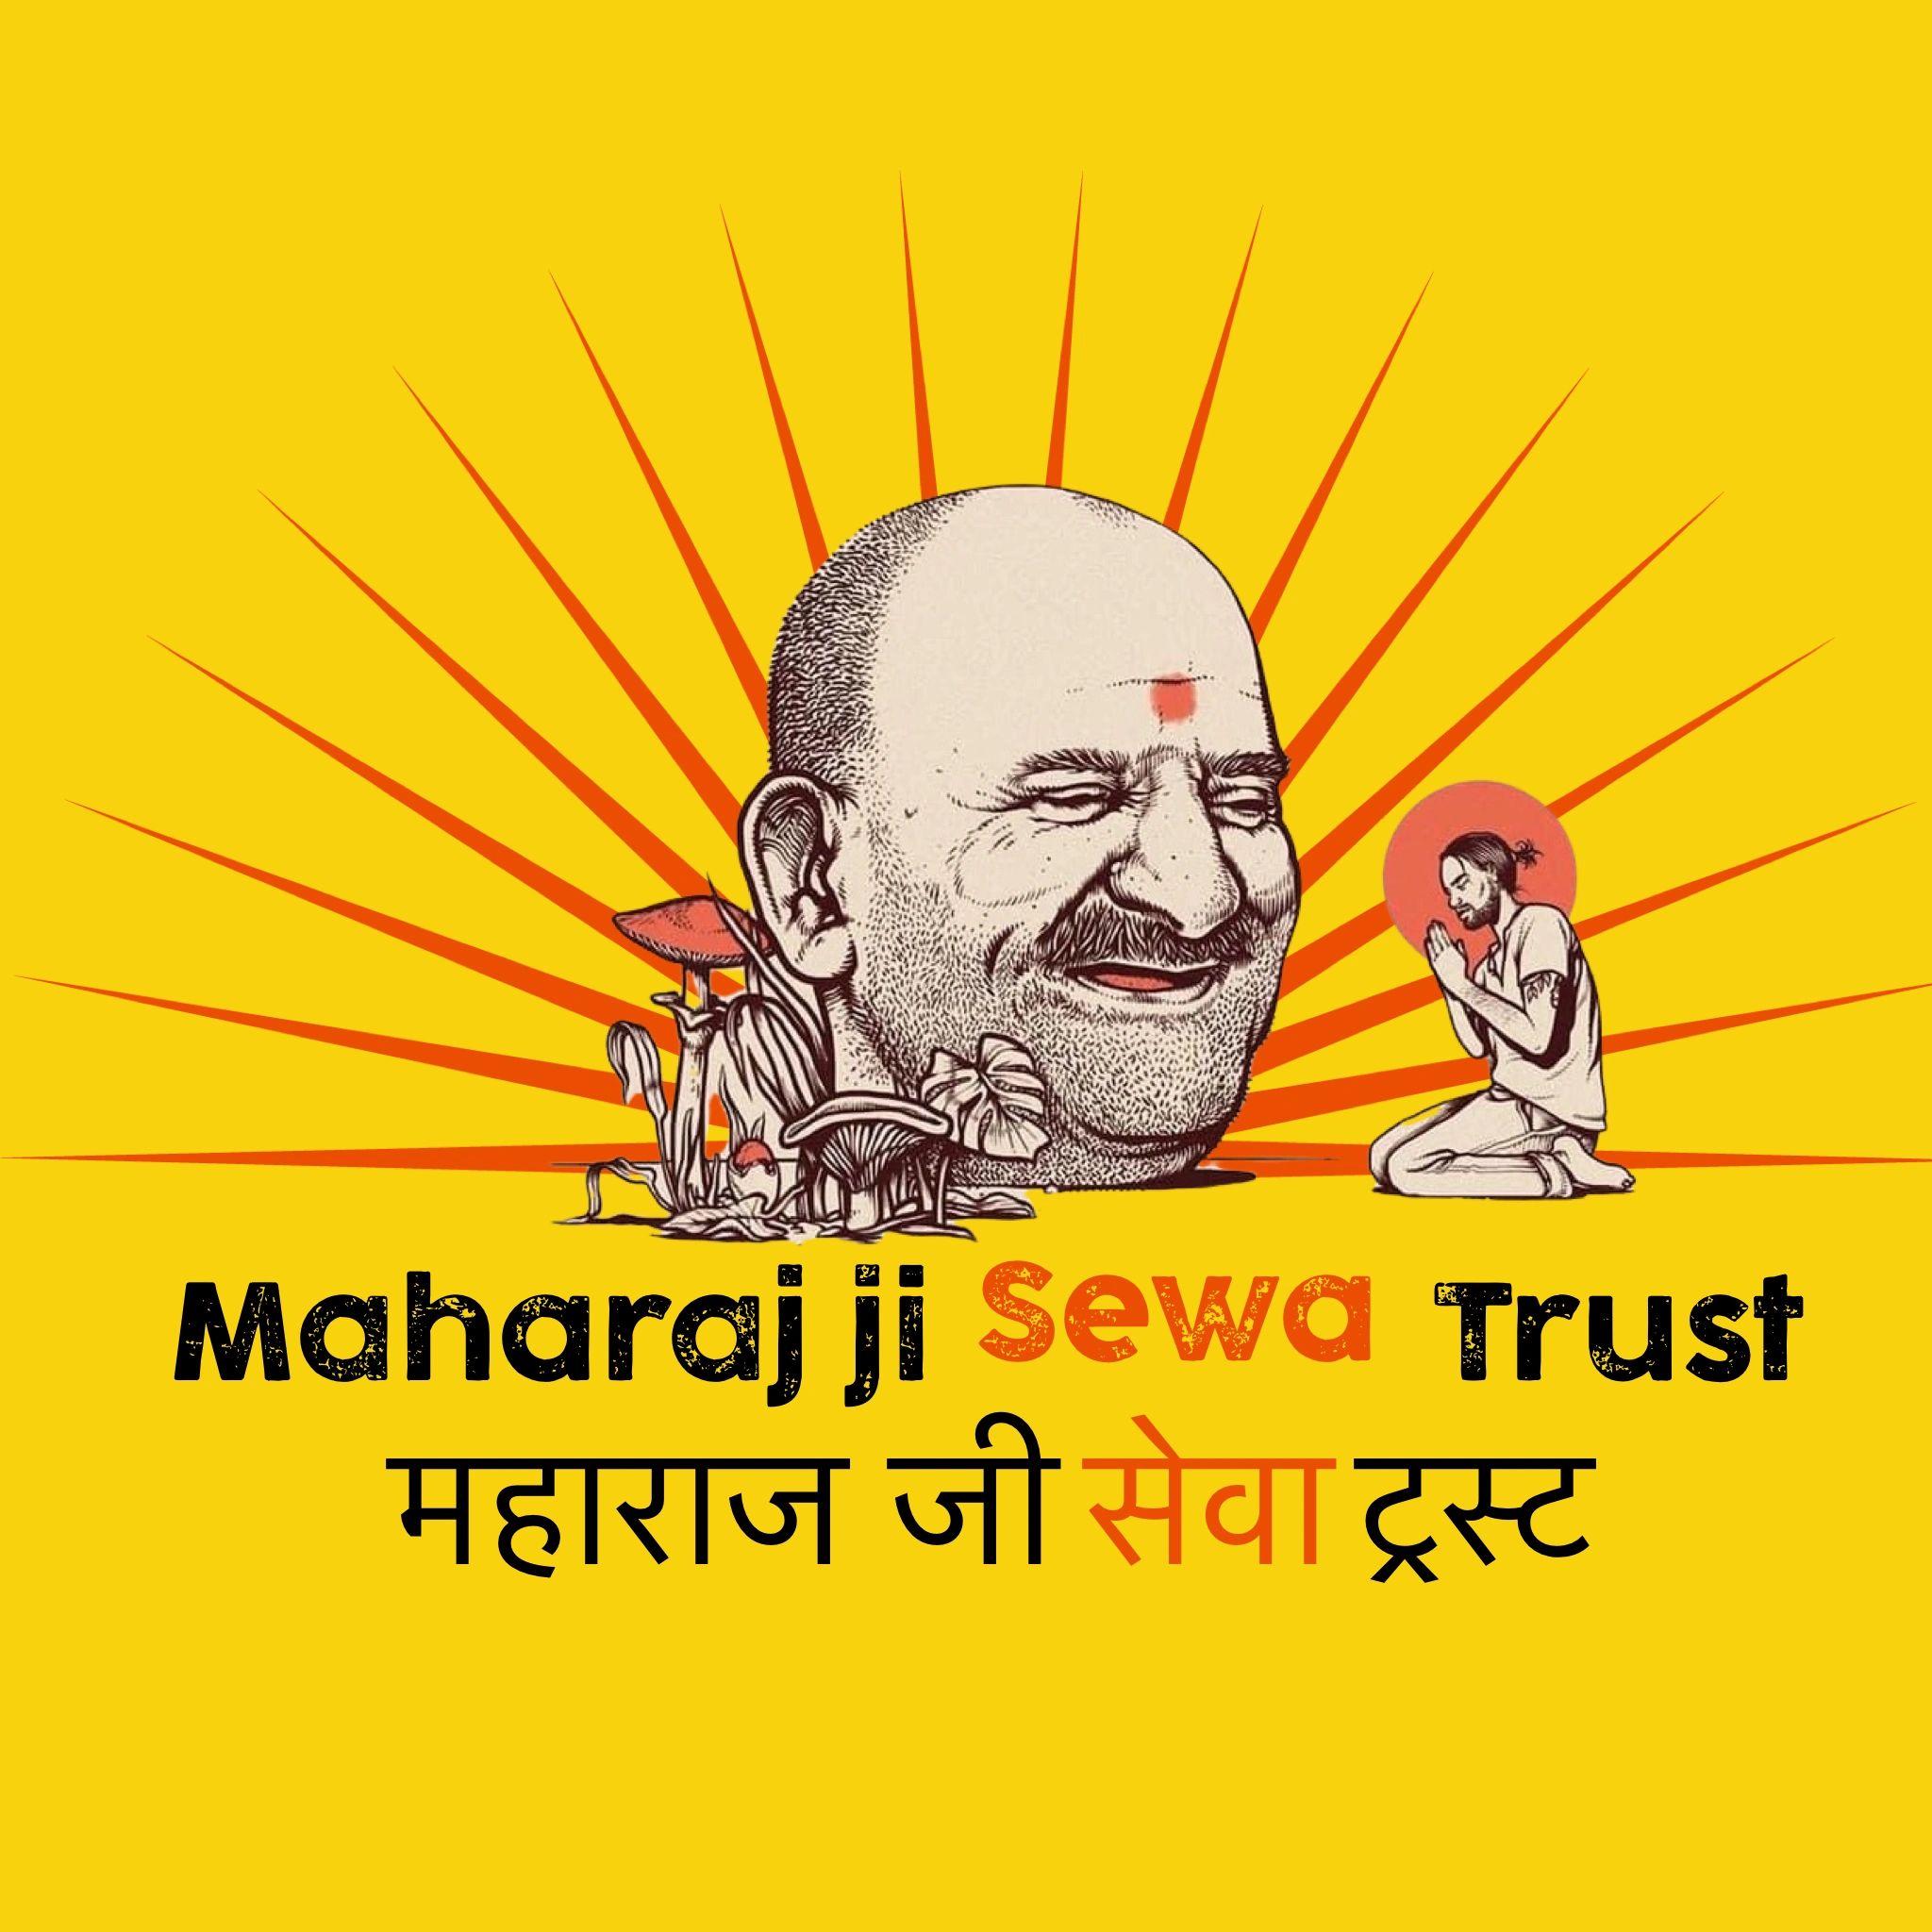 Who is Maharaj ji?